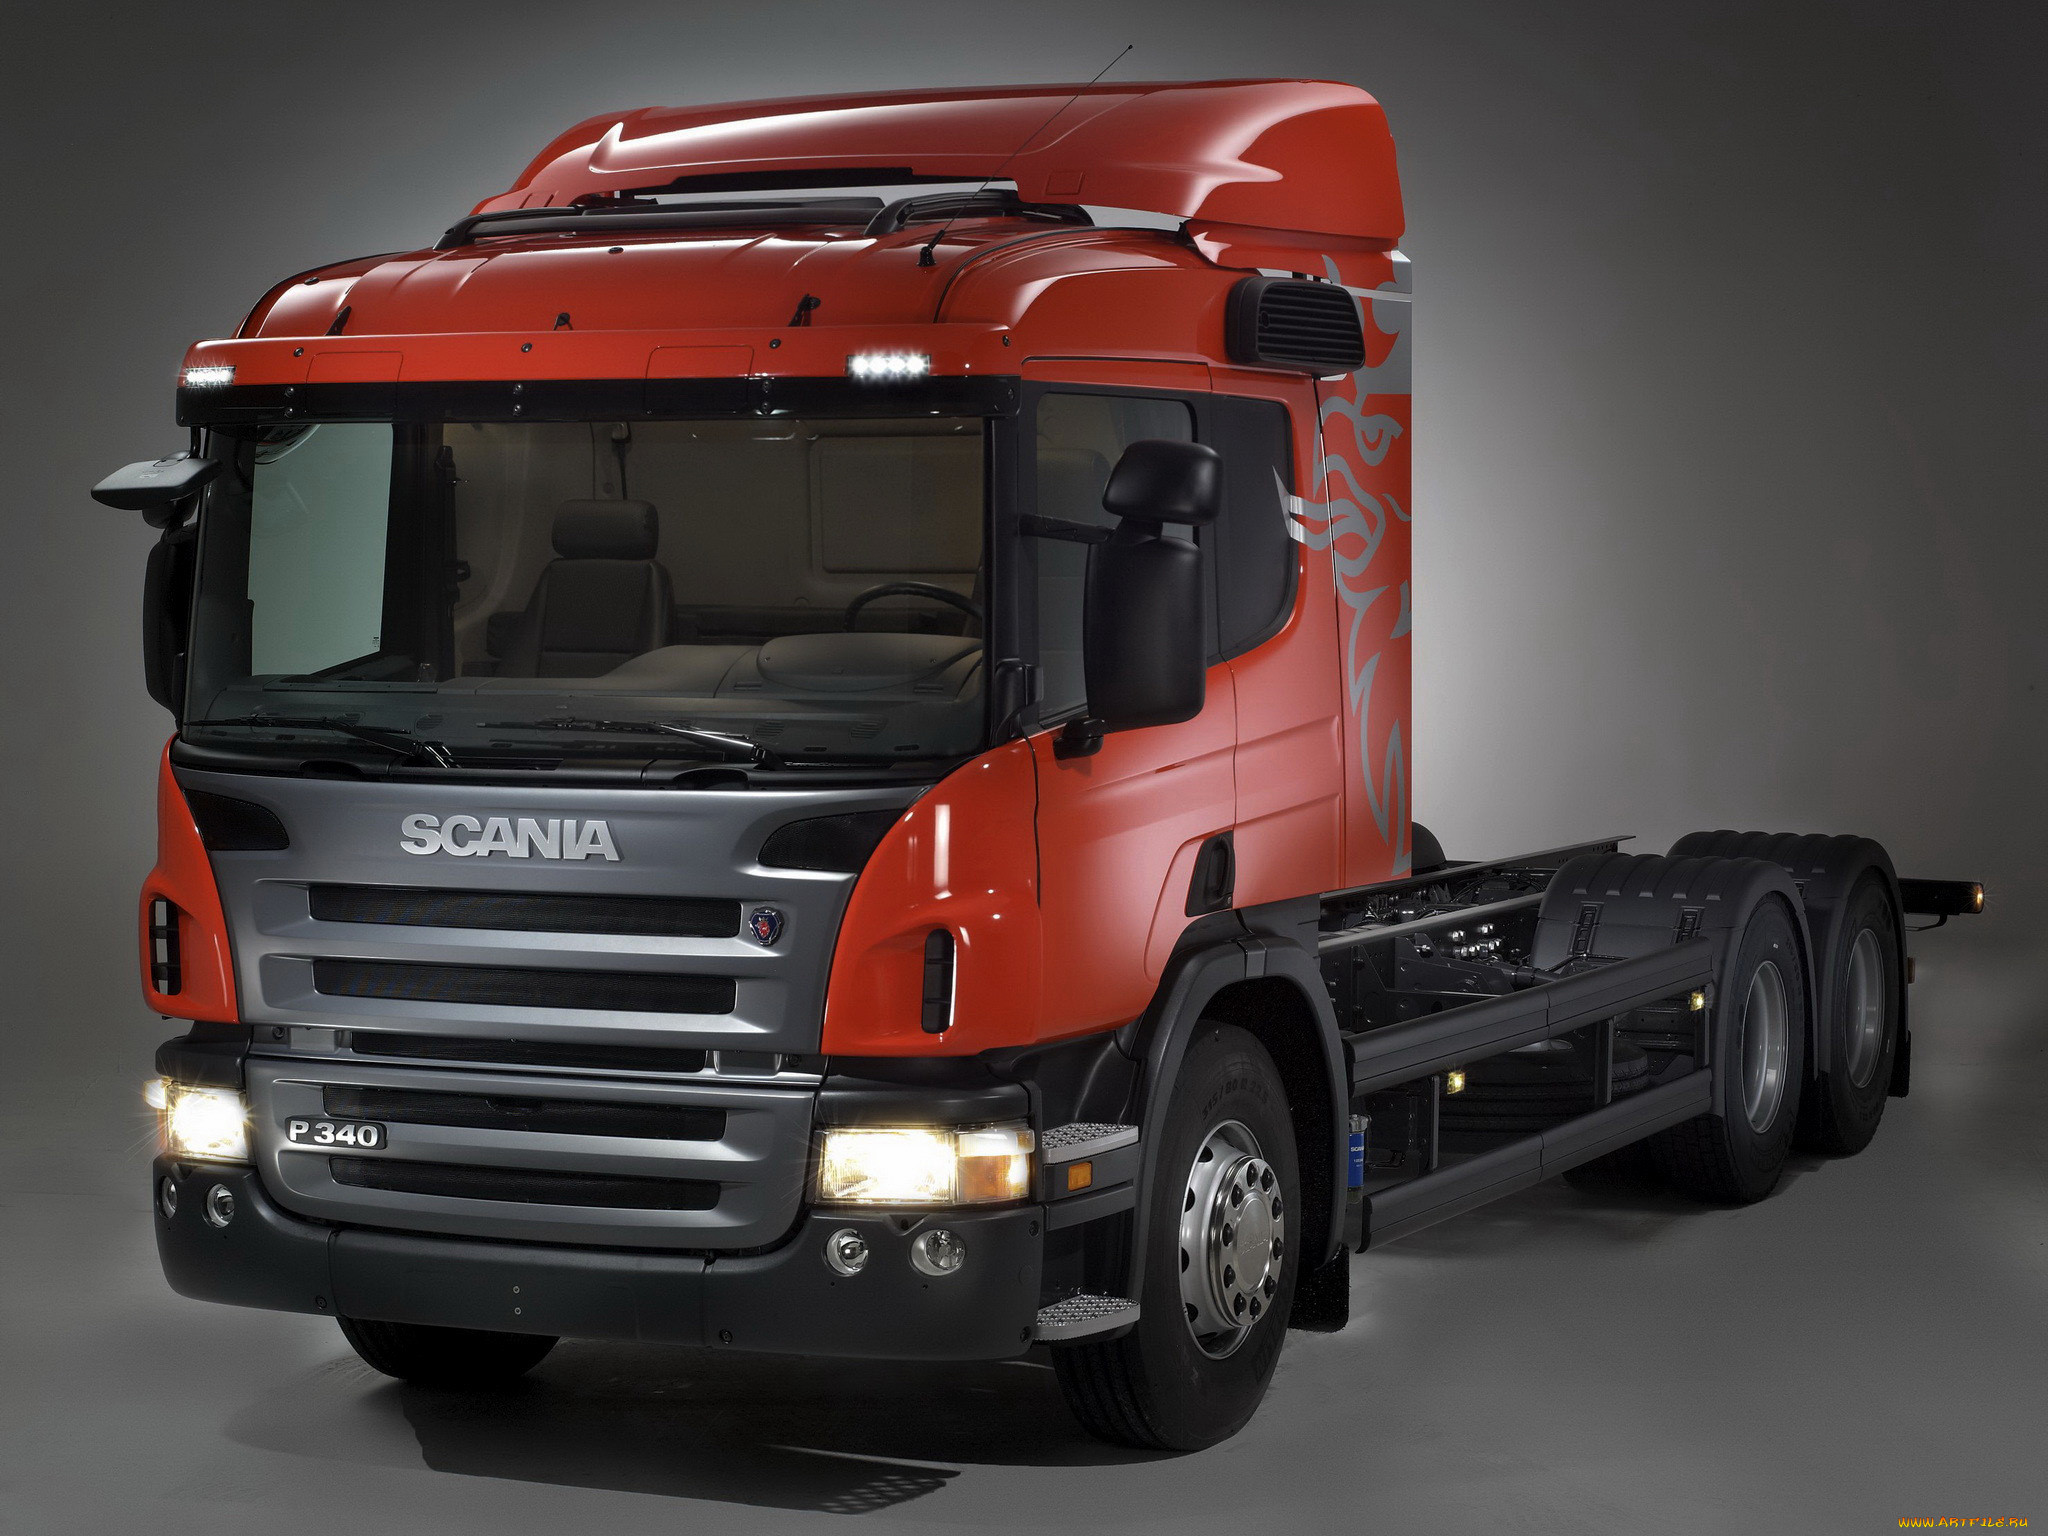 Scania p series. Scania p340. Скания r340. Скания тягач p340. Магистральный тягач Scania p340.